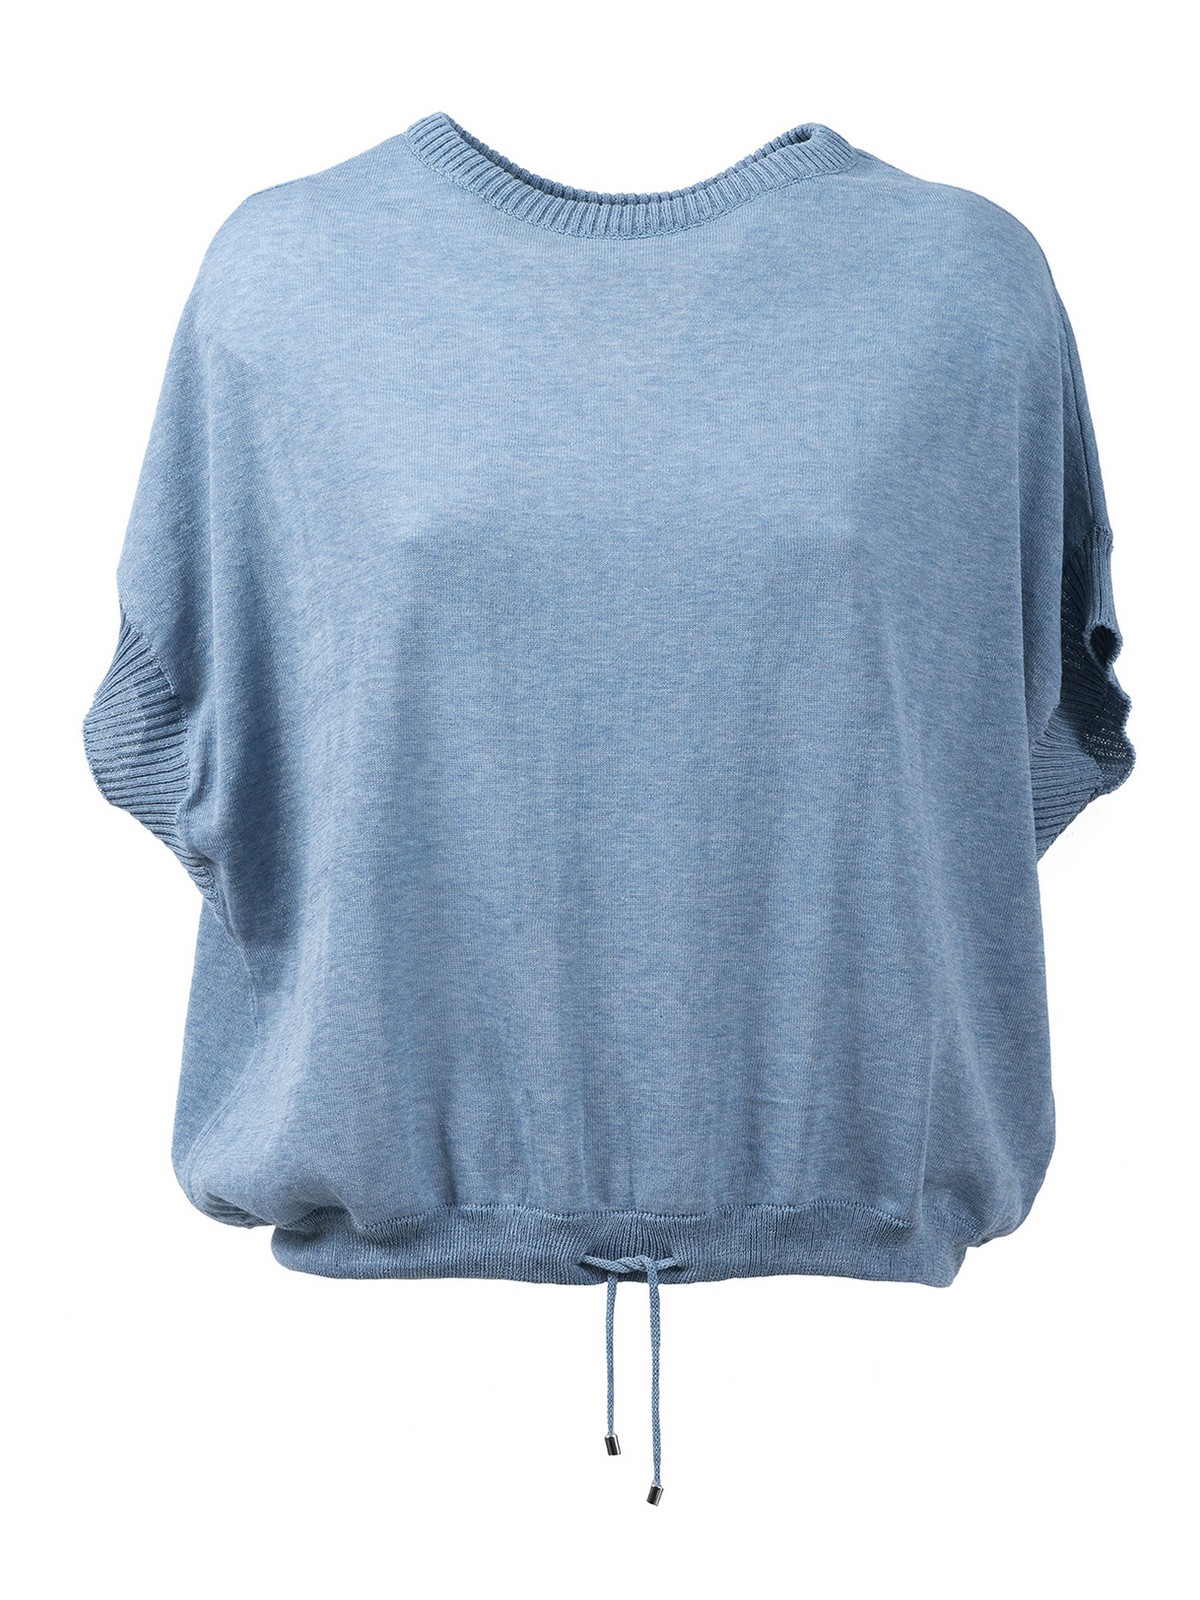 Eleven88 Cotton Short Sleeves Crewneck In Azul Claro